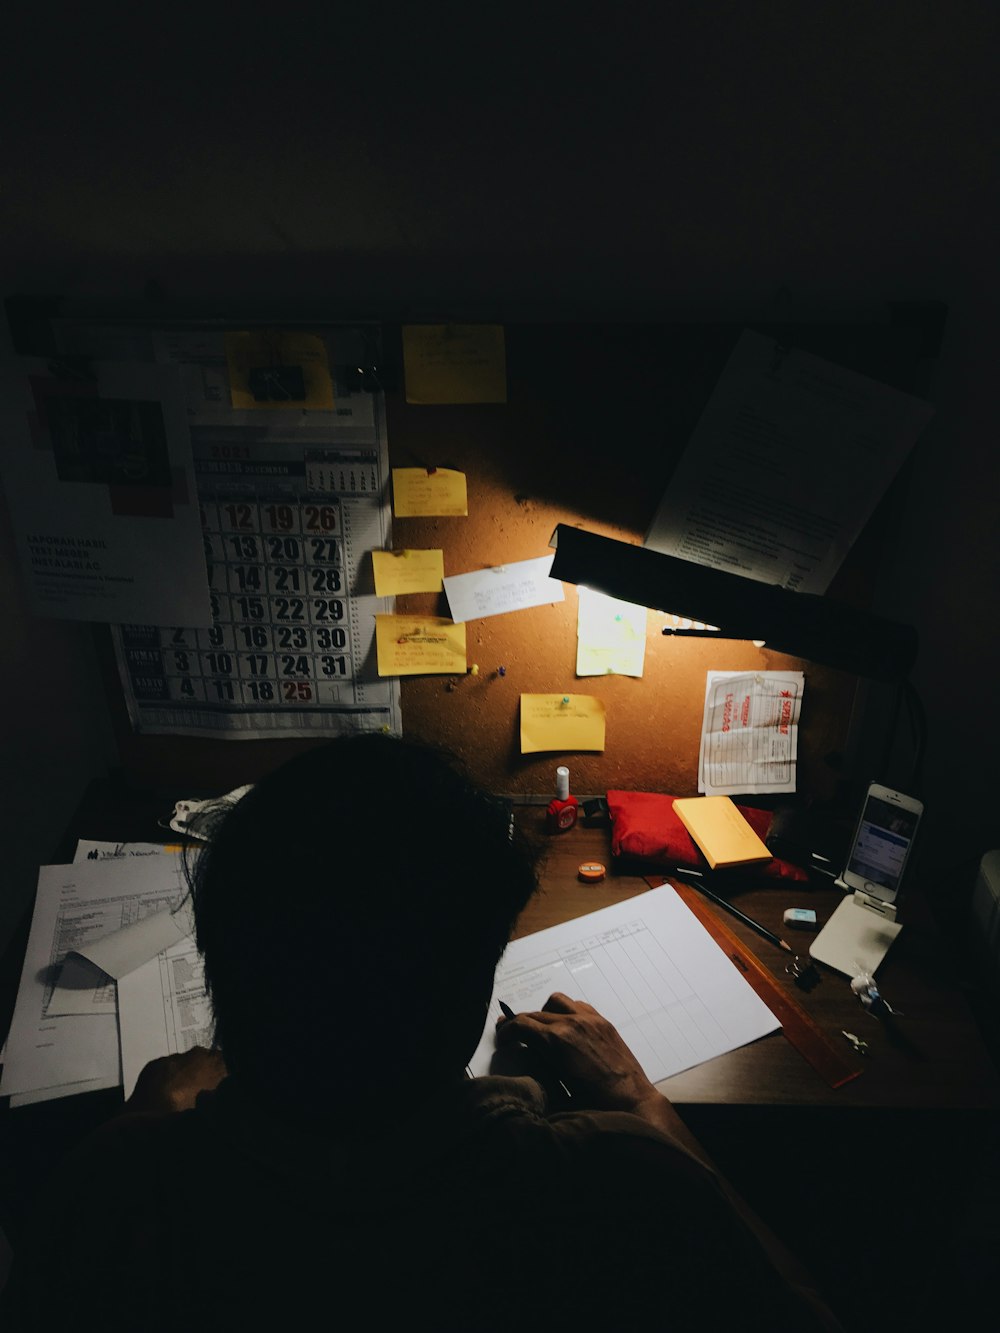 Una persona sentada en un escritorio frente a una lámpara